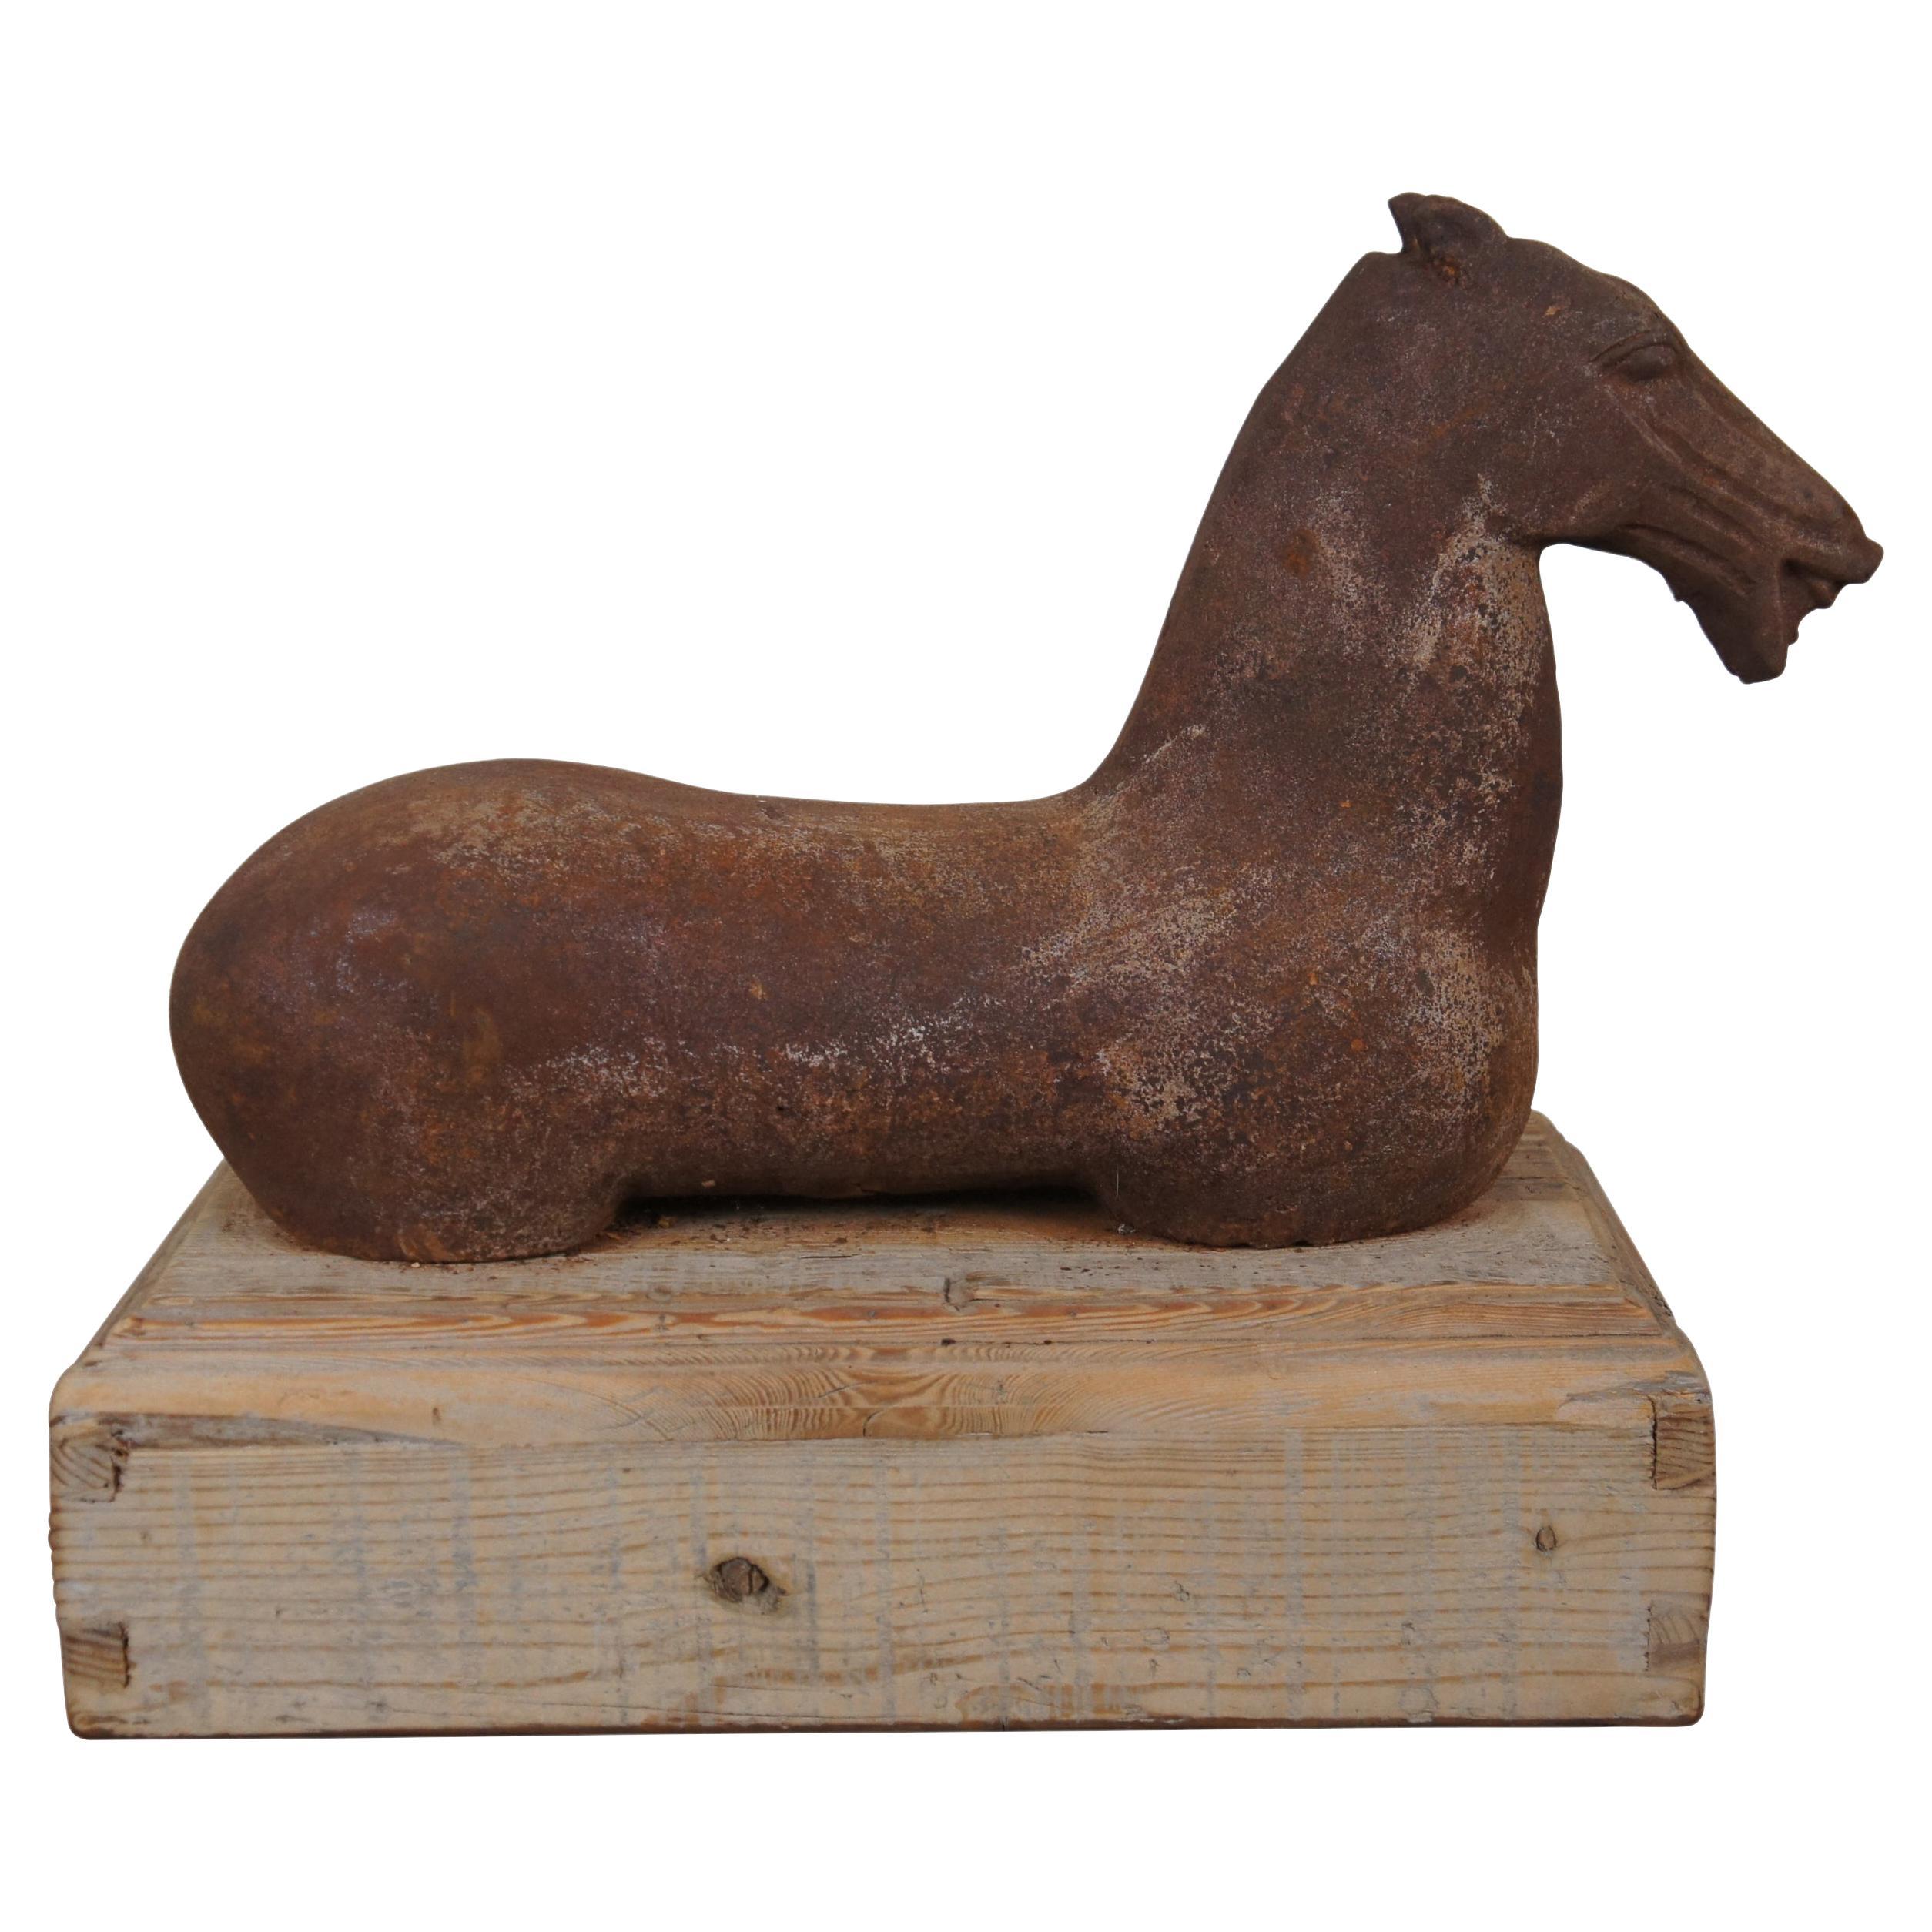 Vintage Han Dynasty Style Cast Iron Horse Sculpture on Wood Base 21" (Sculpture de cheval en fonte sur base en bois)